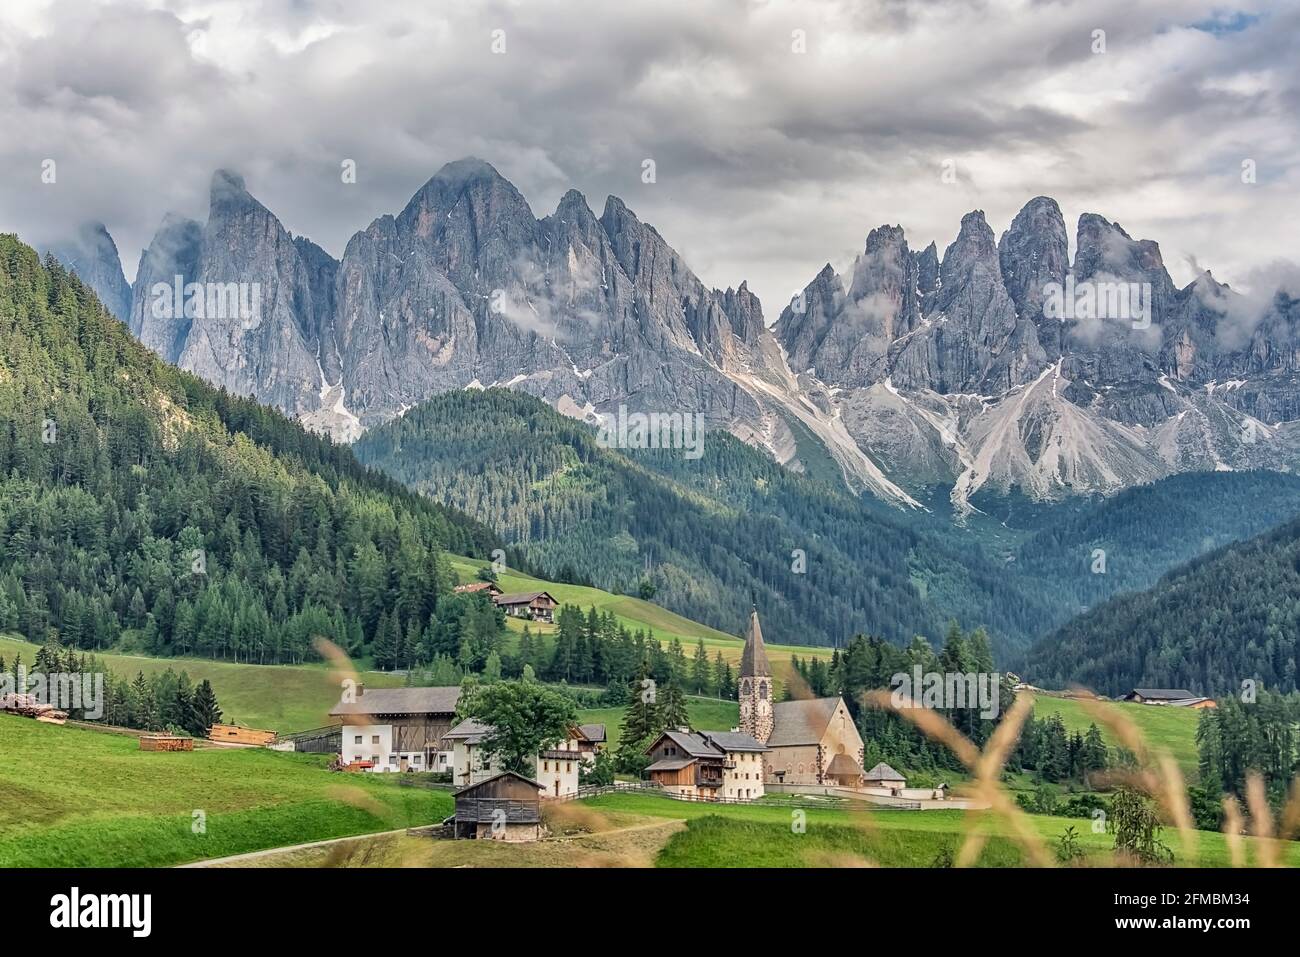 Village de Santa Maddalena avec de belles montagnes des Dolomites en arrière-plan, vallée du Val di Funes, Italie Banque D'Images